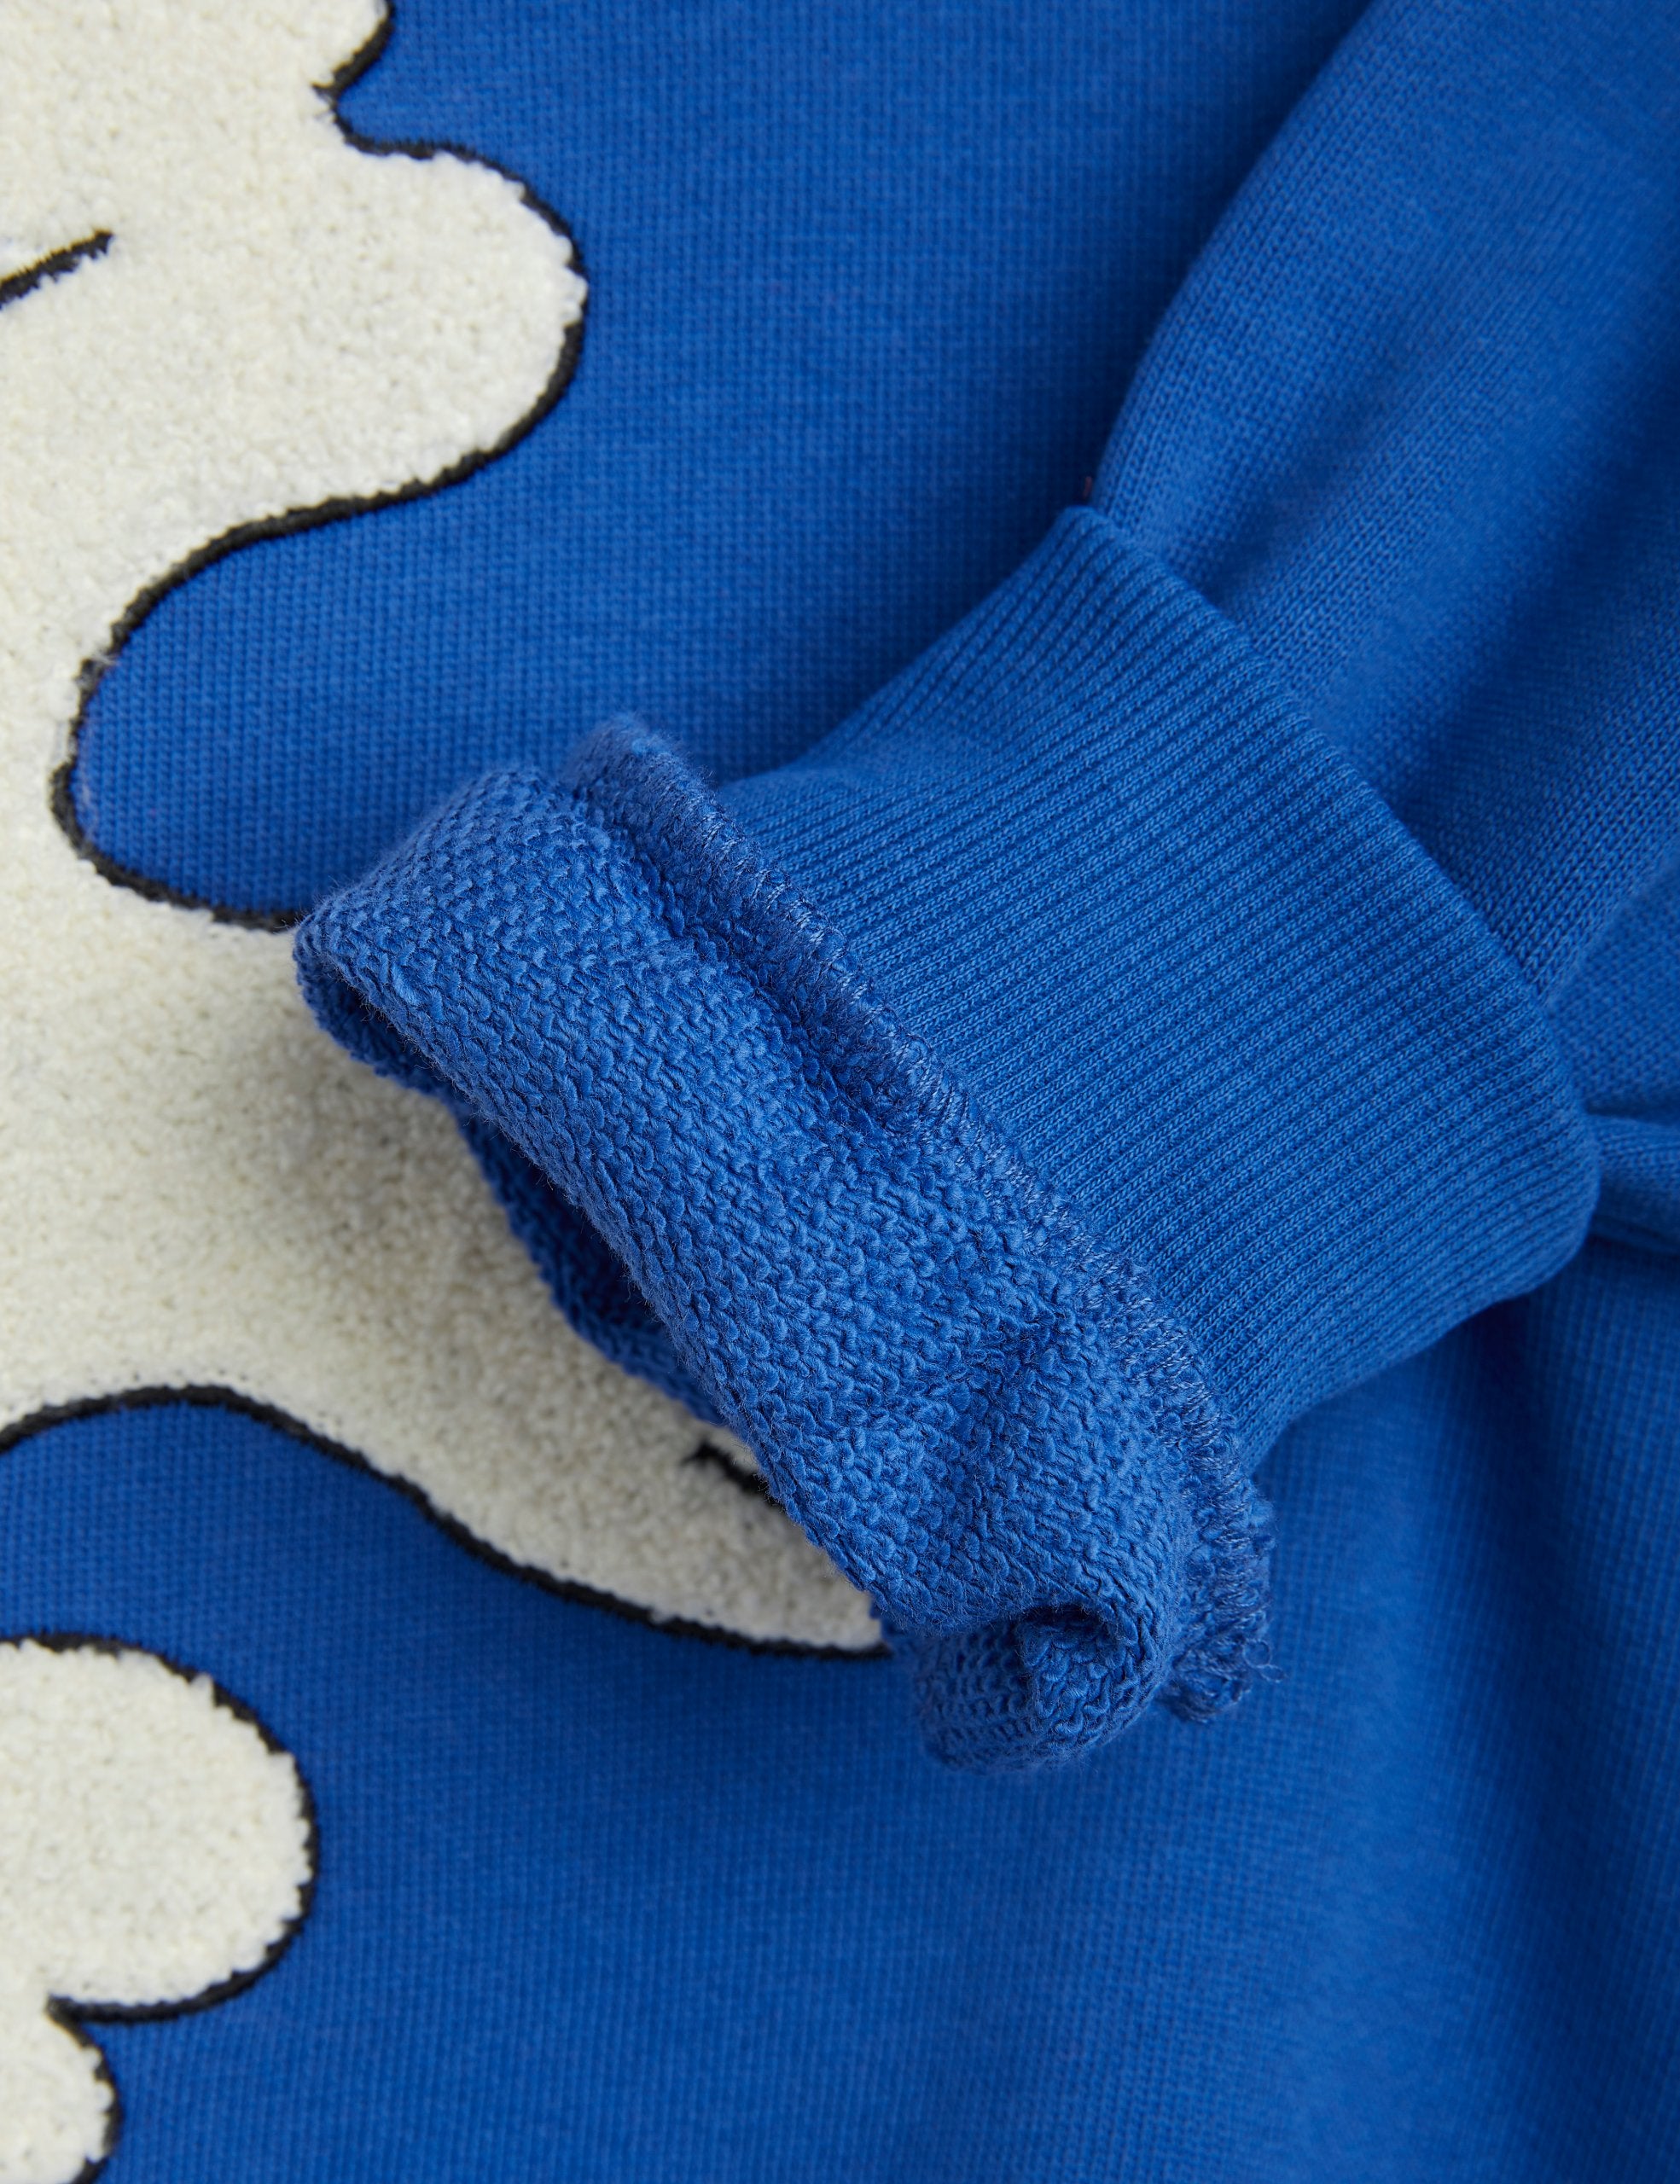 Mini Rodini MR x Wrangler Peace dove chenille sweatshirt blue